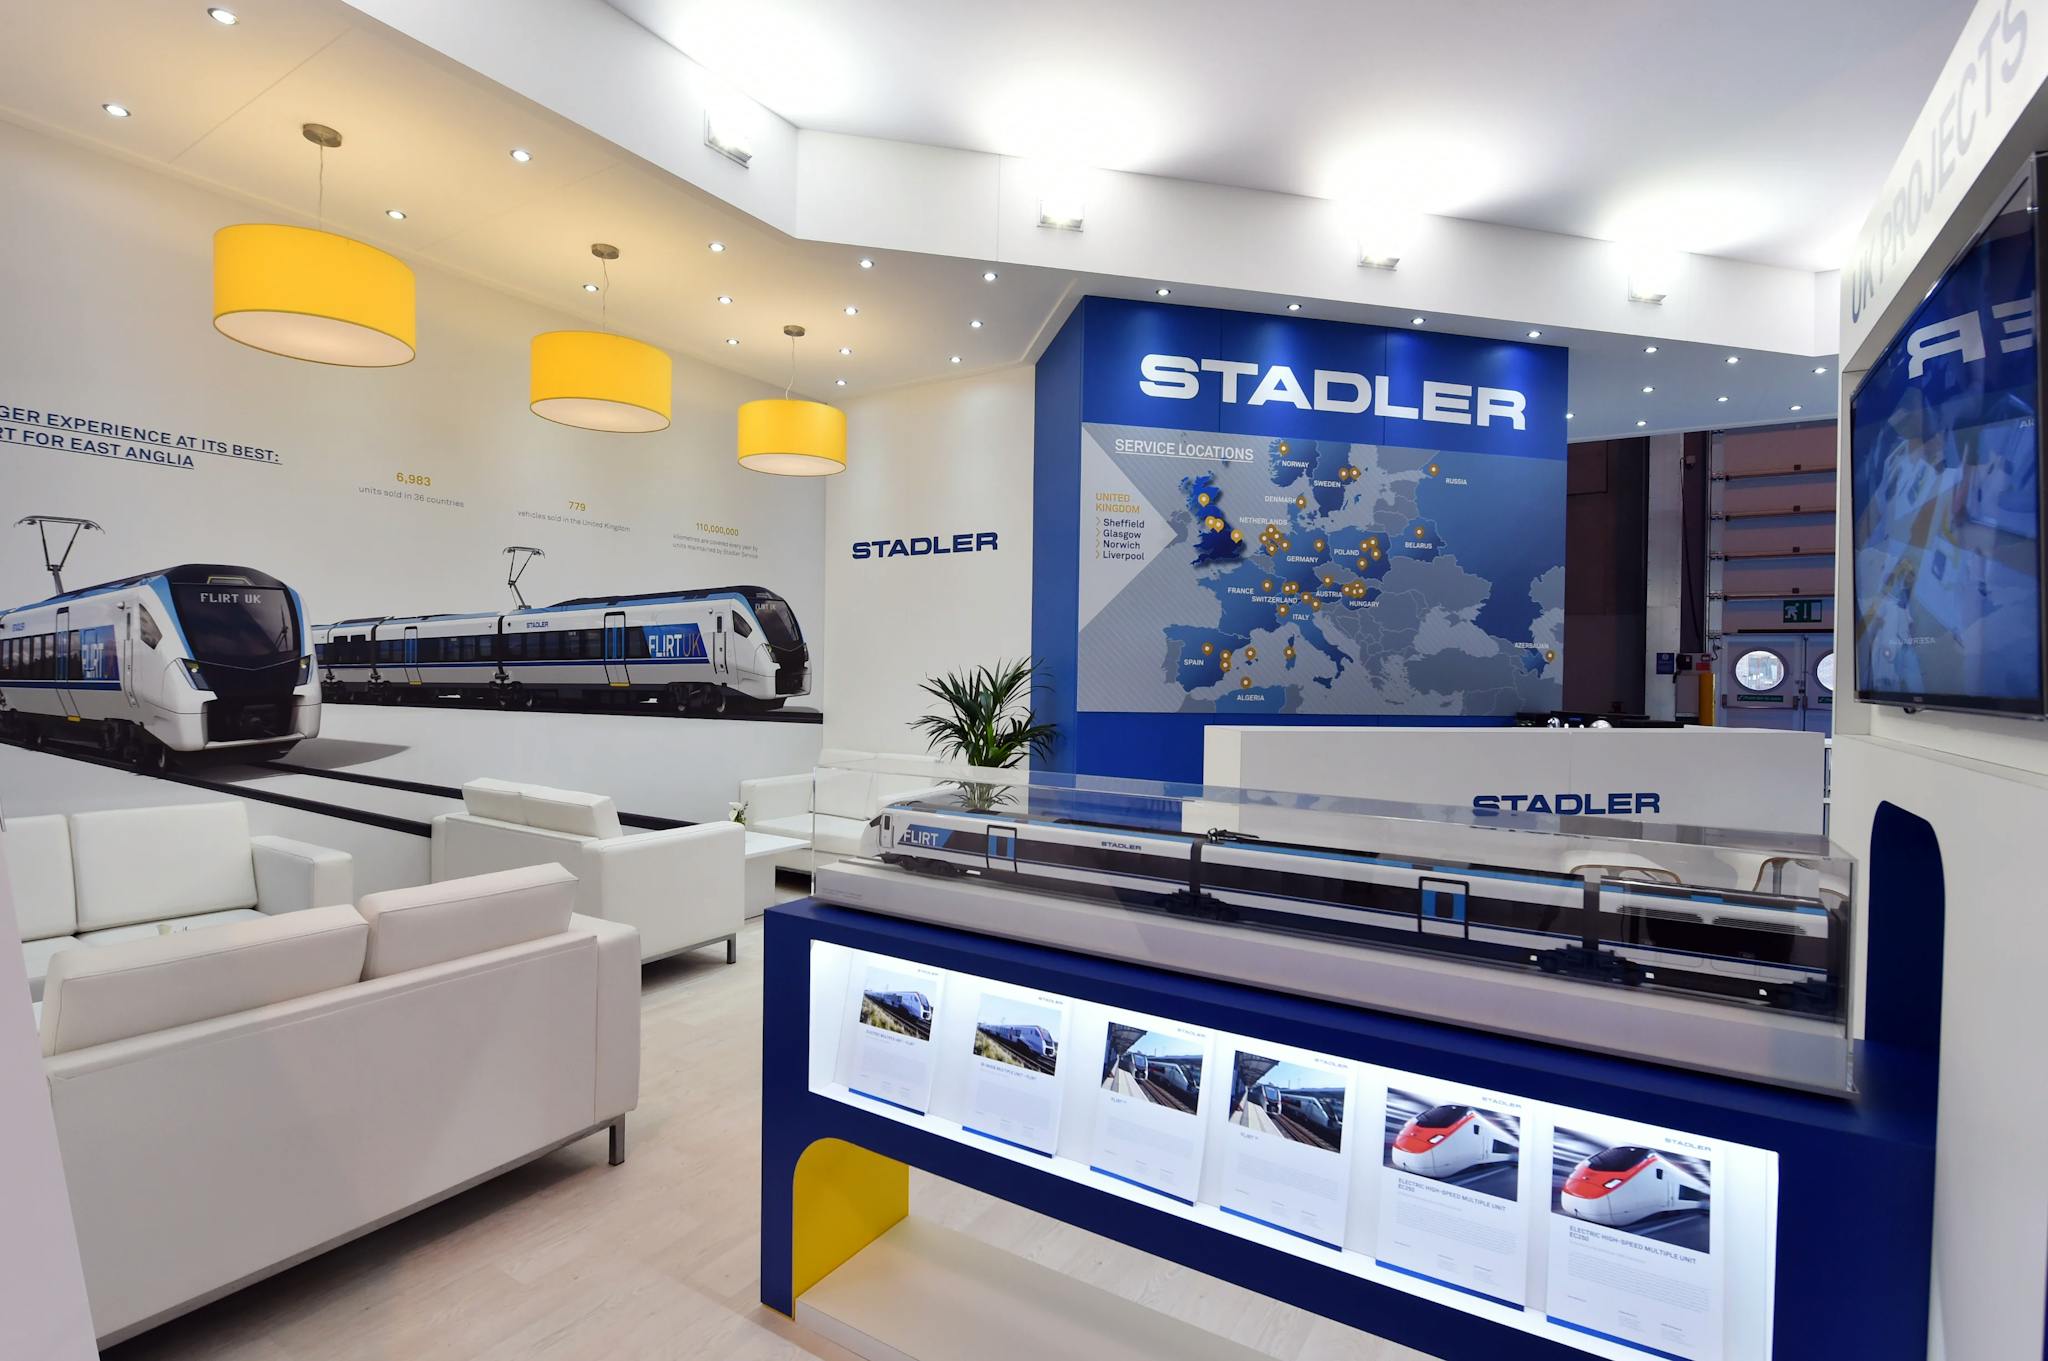 Stadler Exhibition Stand